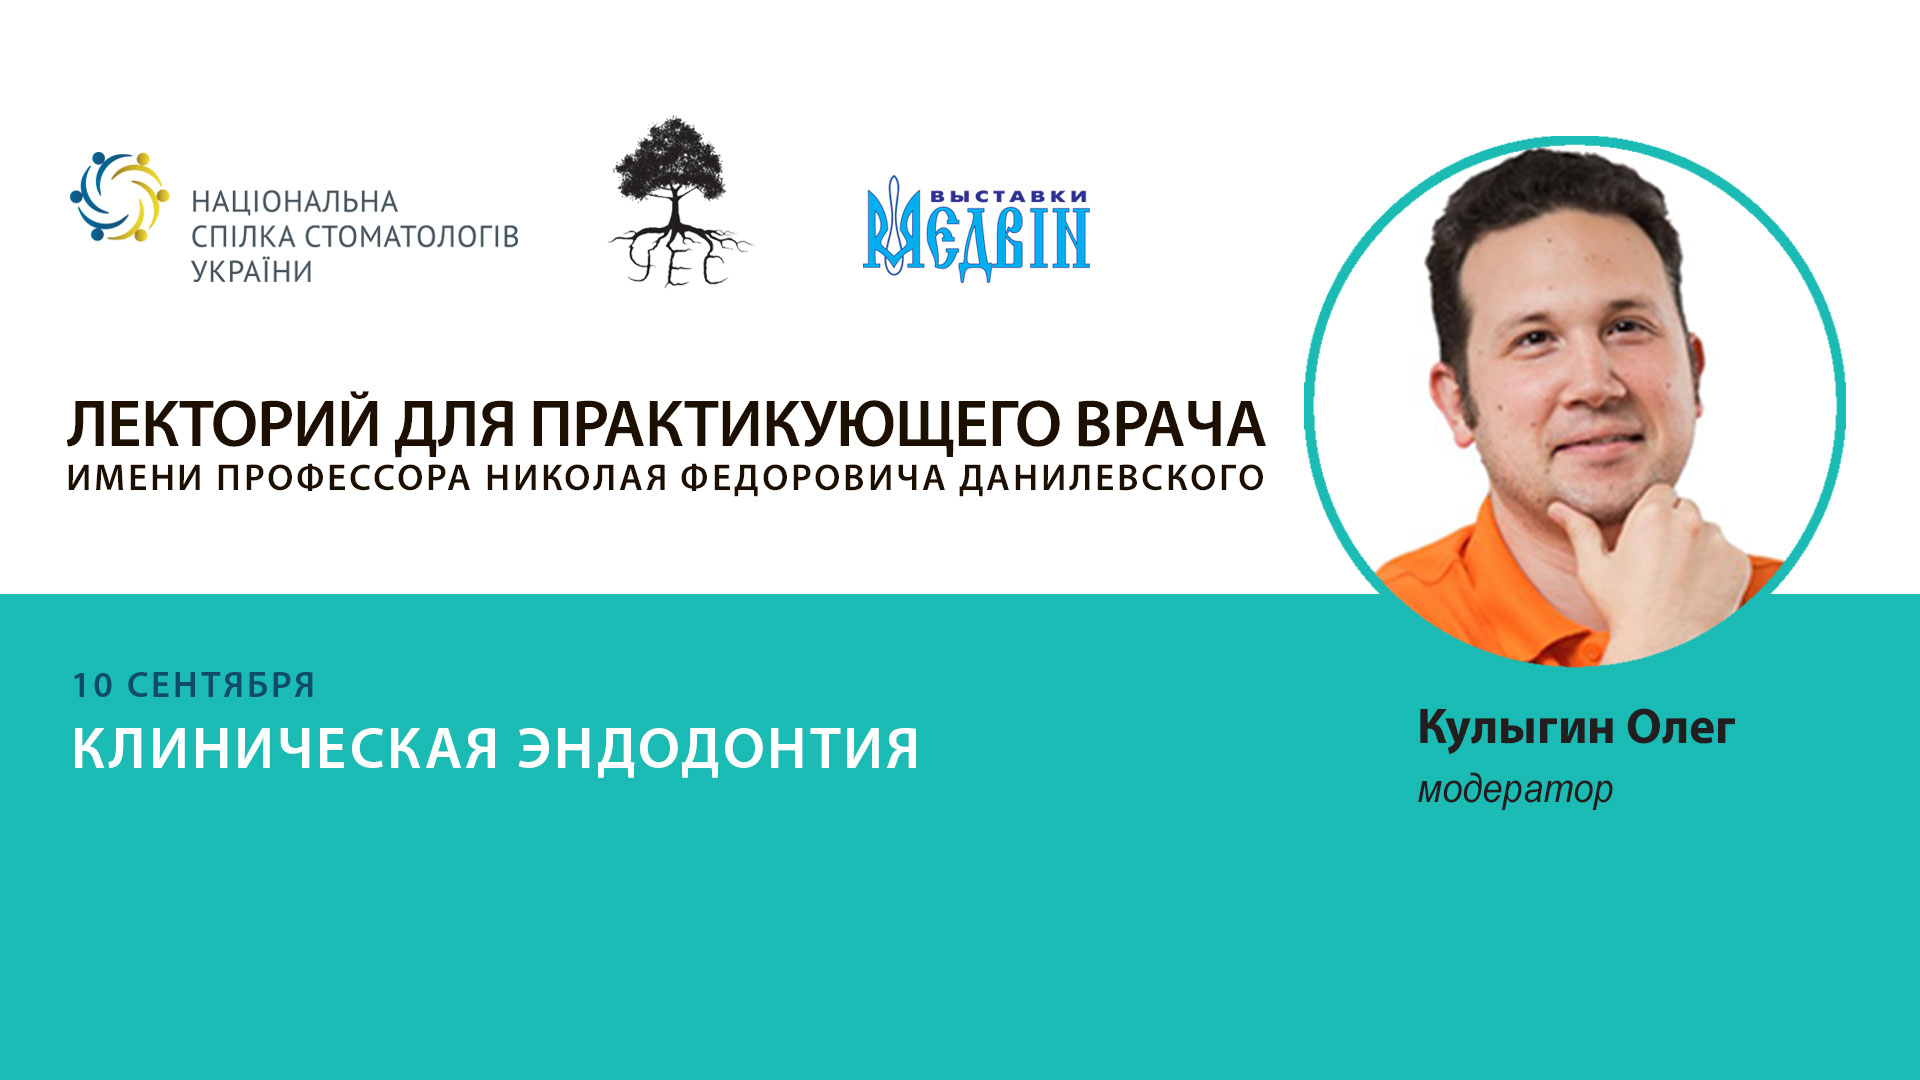 Олег Кулыгин, соучредитель Украинсколго эндодонтического сообщества